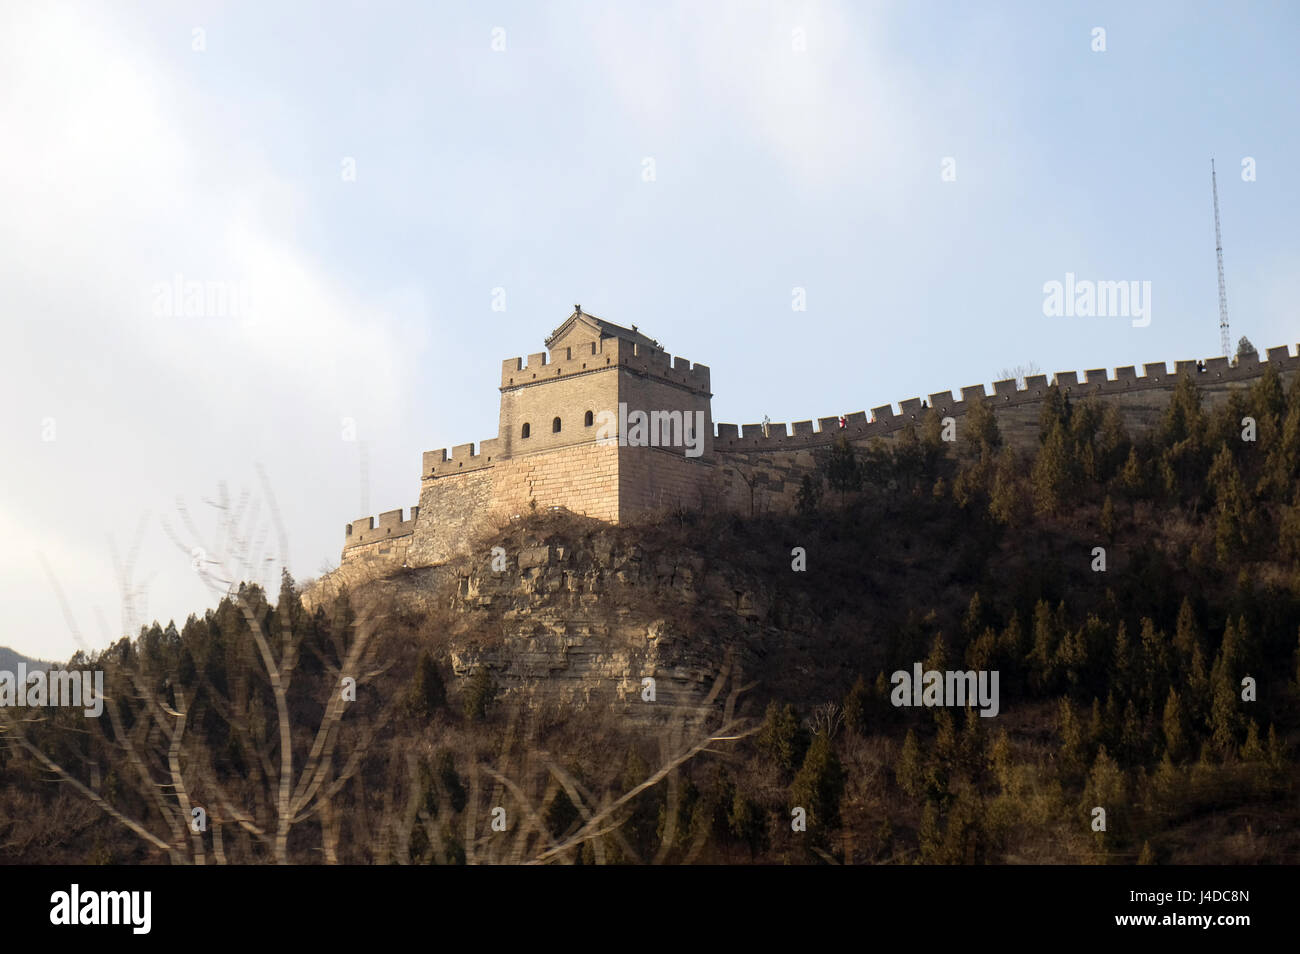 La Gran Muralla China en Badaling, China, 24 de febrero de 2016. Foto de stock